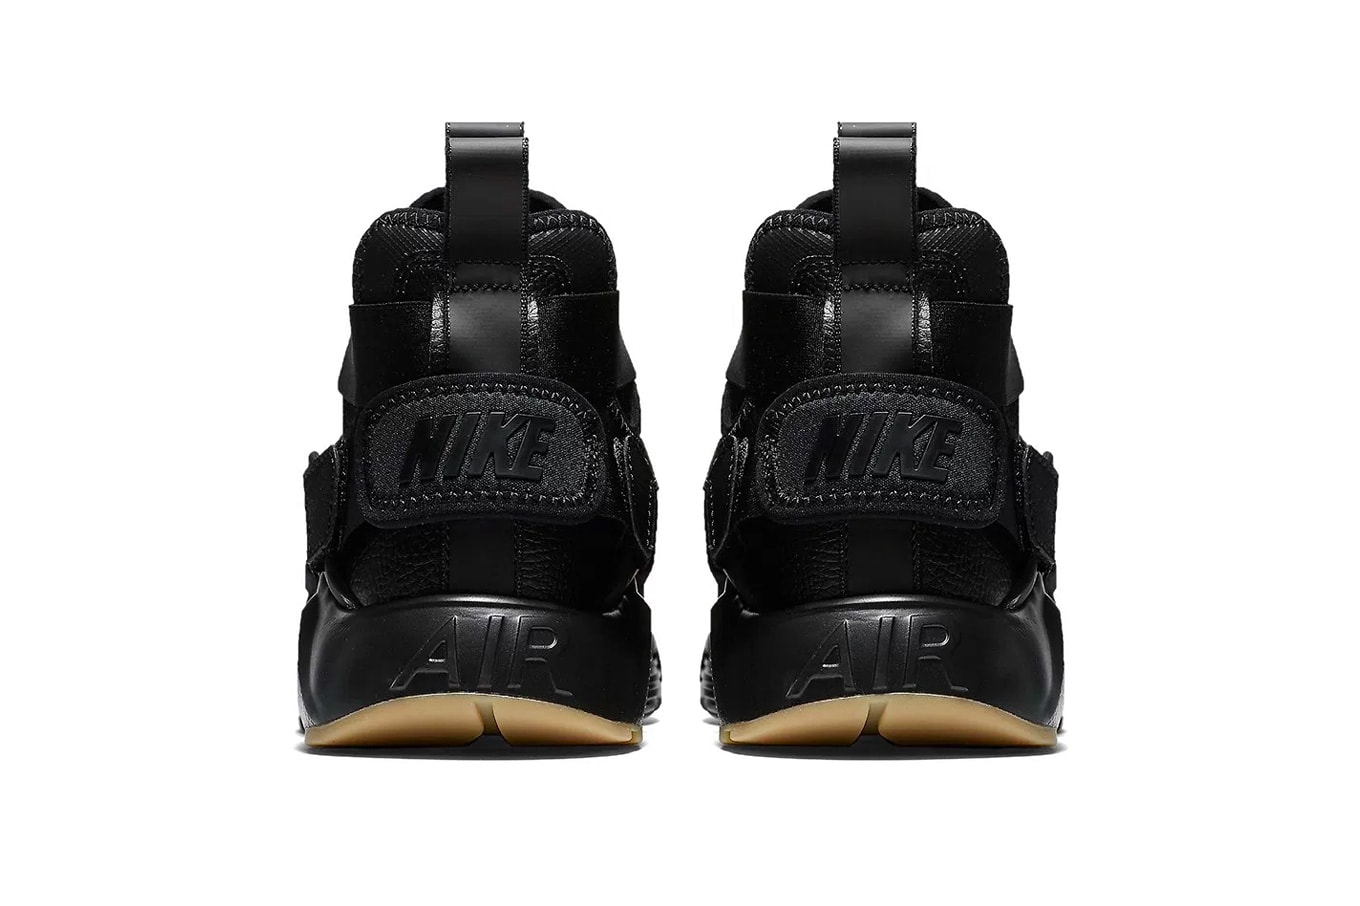 Nike Air Huarache City "Black/Gum" Preview Release Info